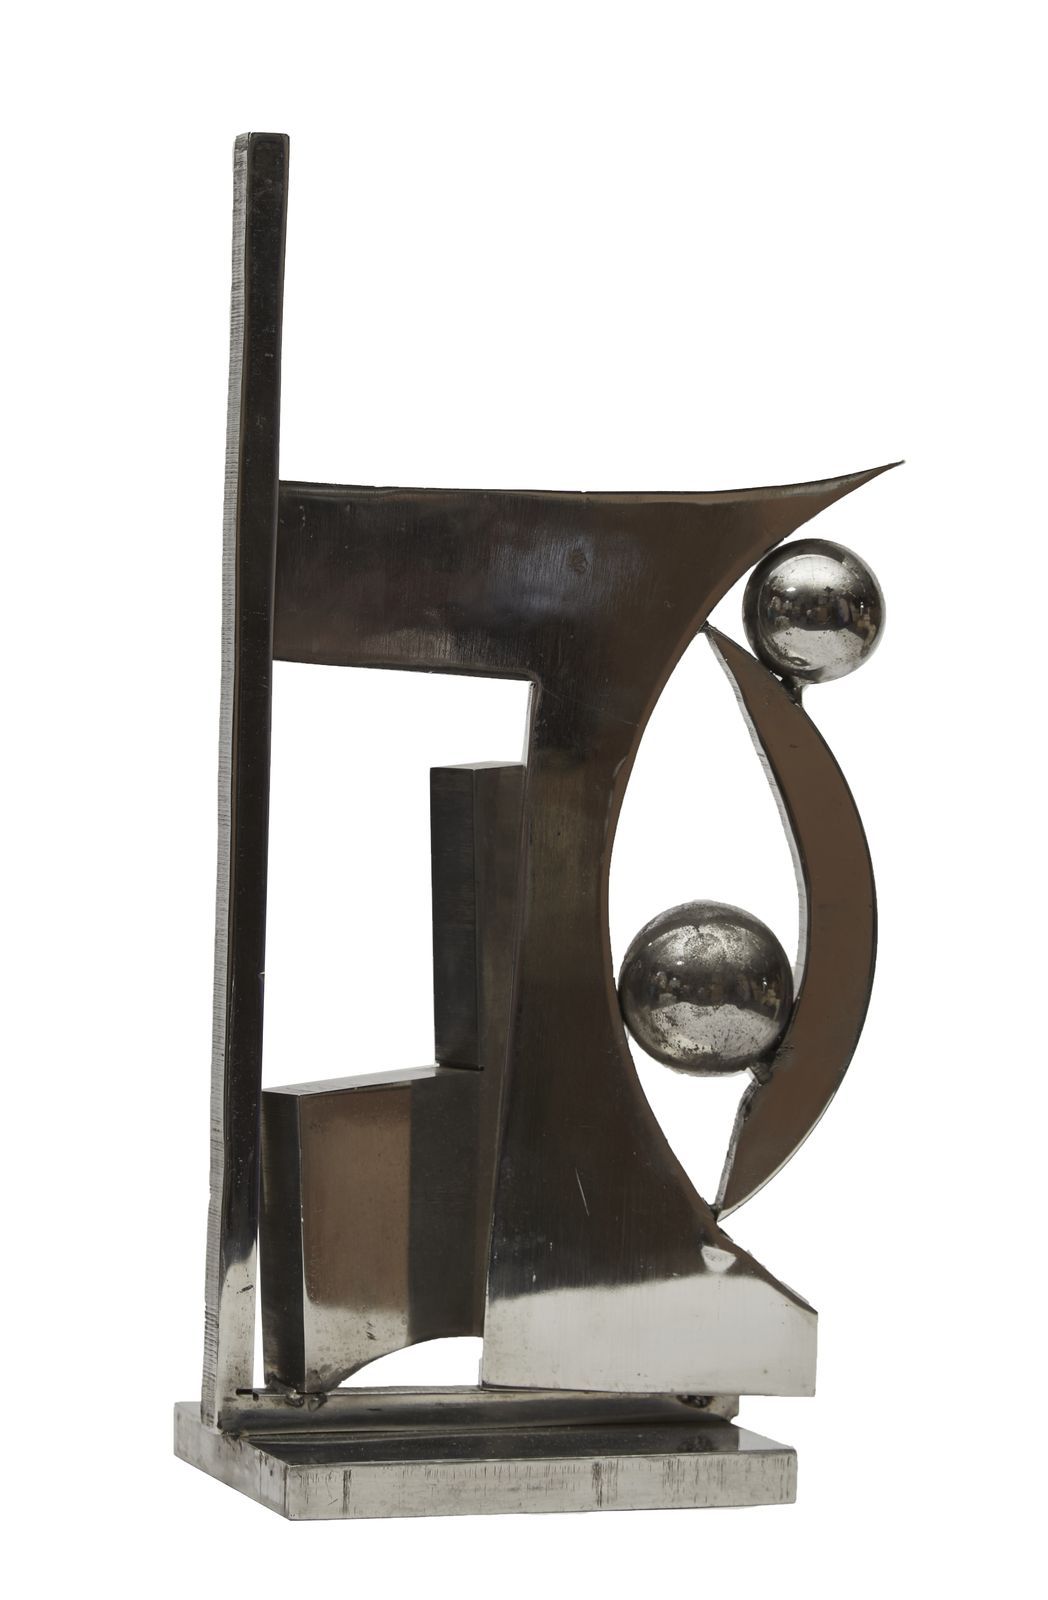 Null 74 Rosette BIR (1926-1993)

Comparaison

Sculpture en inox poli

Signée

28&hellip;